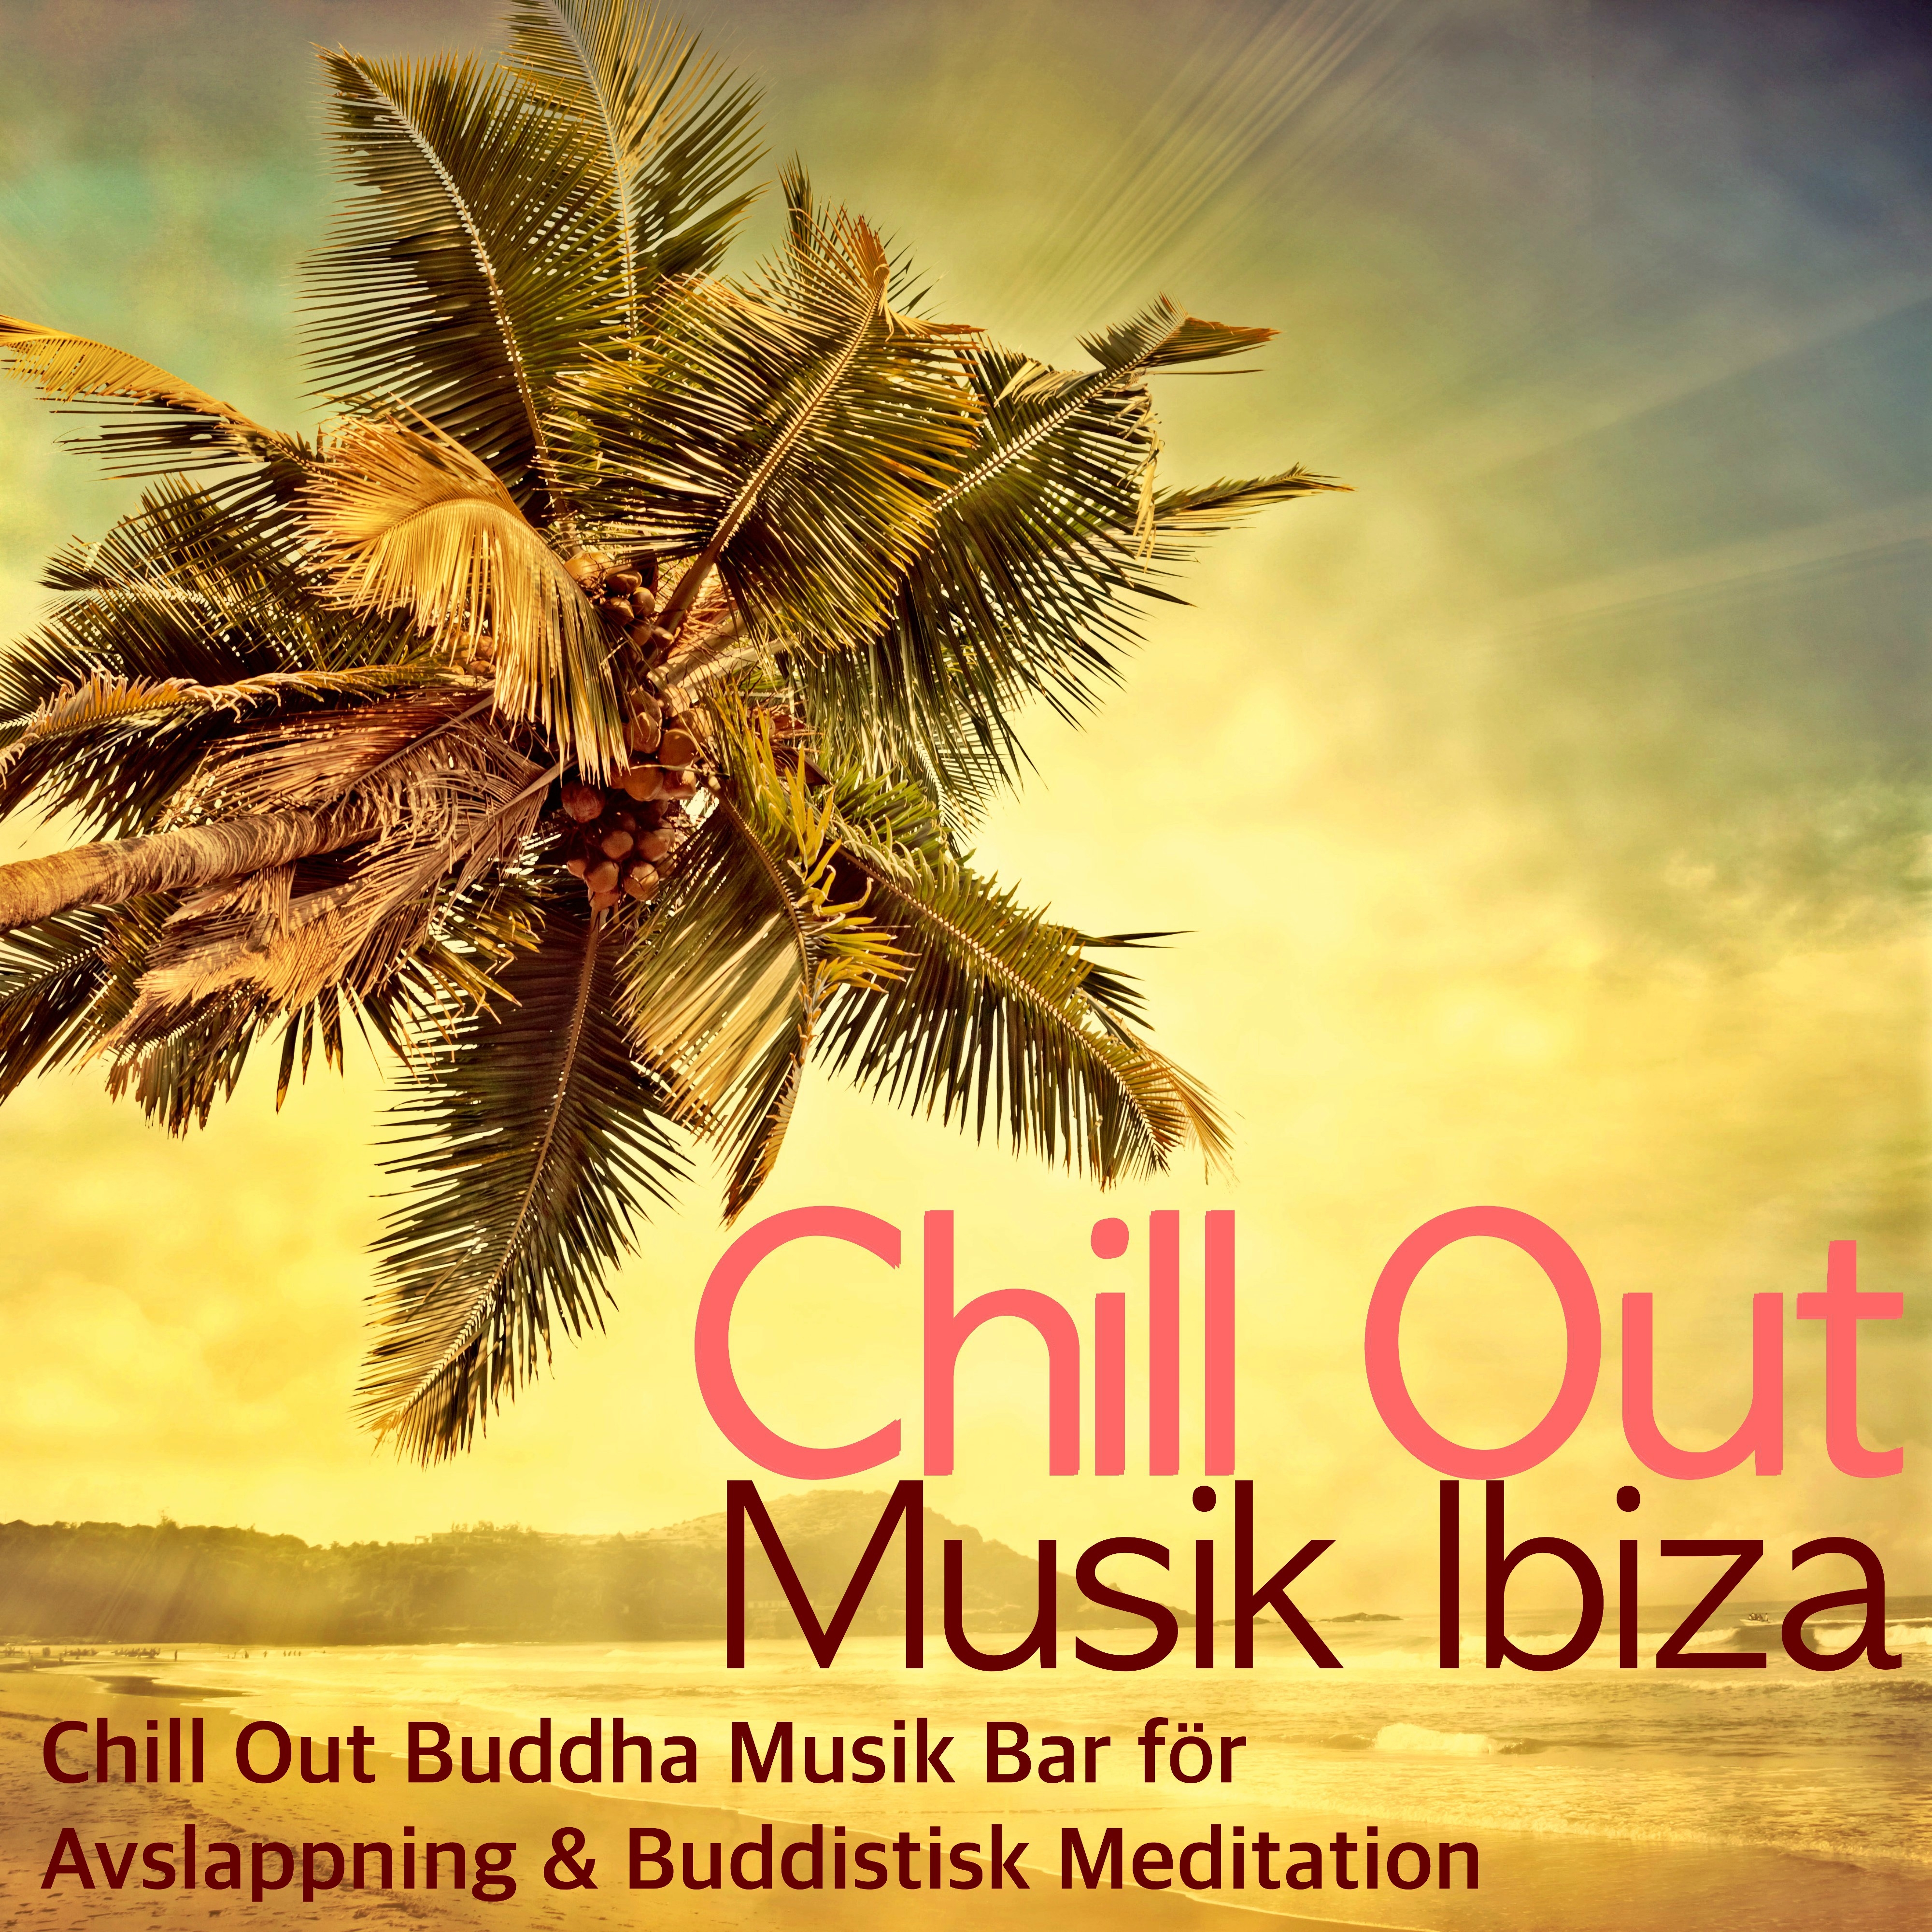 Chill Out Musik Ibiza - Chill Out Buddha Musik Bar för Avslappning & Buddistisk Meditation